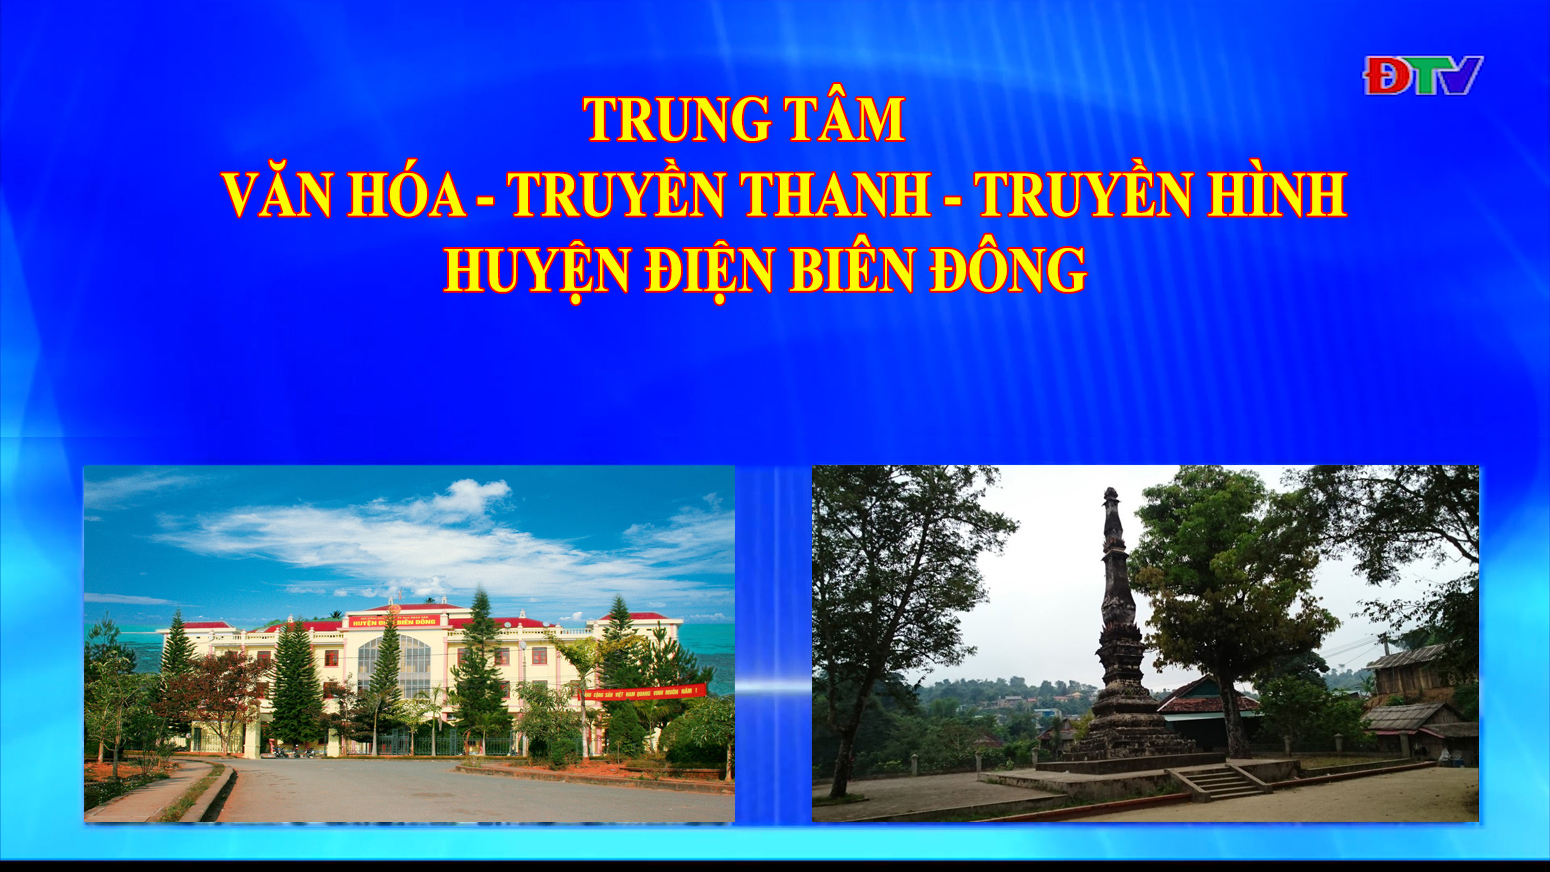 Trung tâm VH-TTTH huyện Điện Biên Đông (Ngày 2-1-2021)